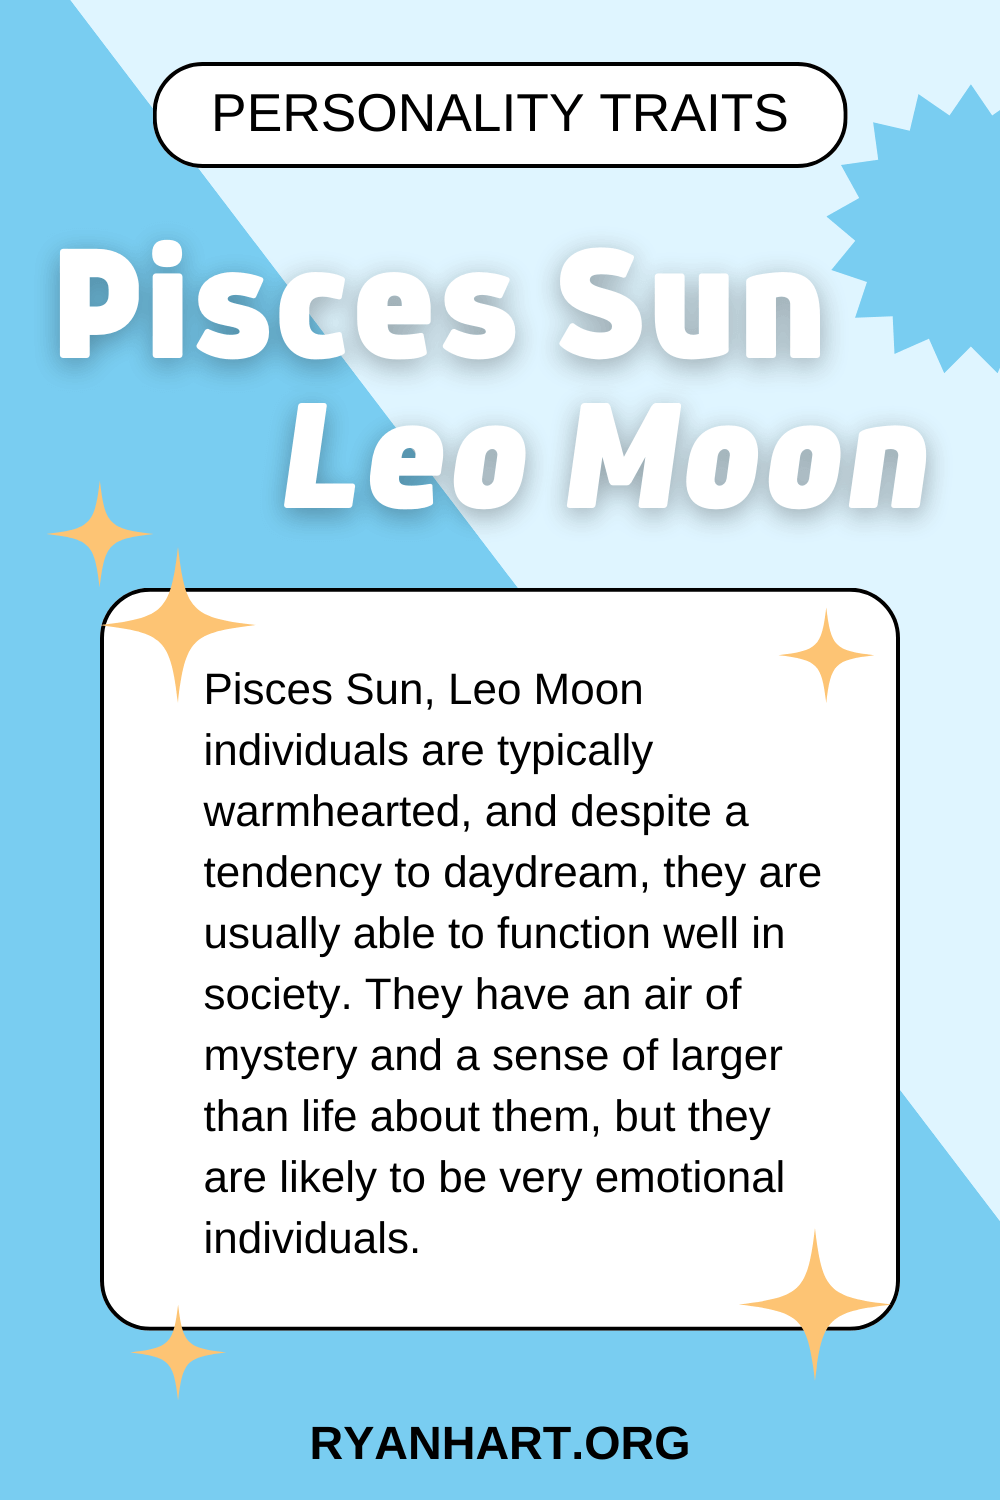 Pisces Sun Leo Moon Description